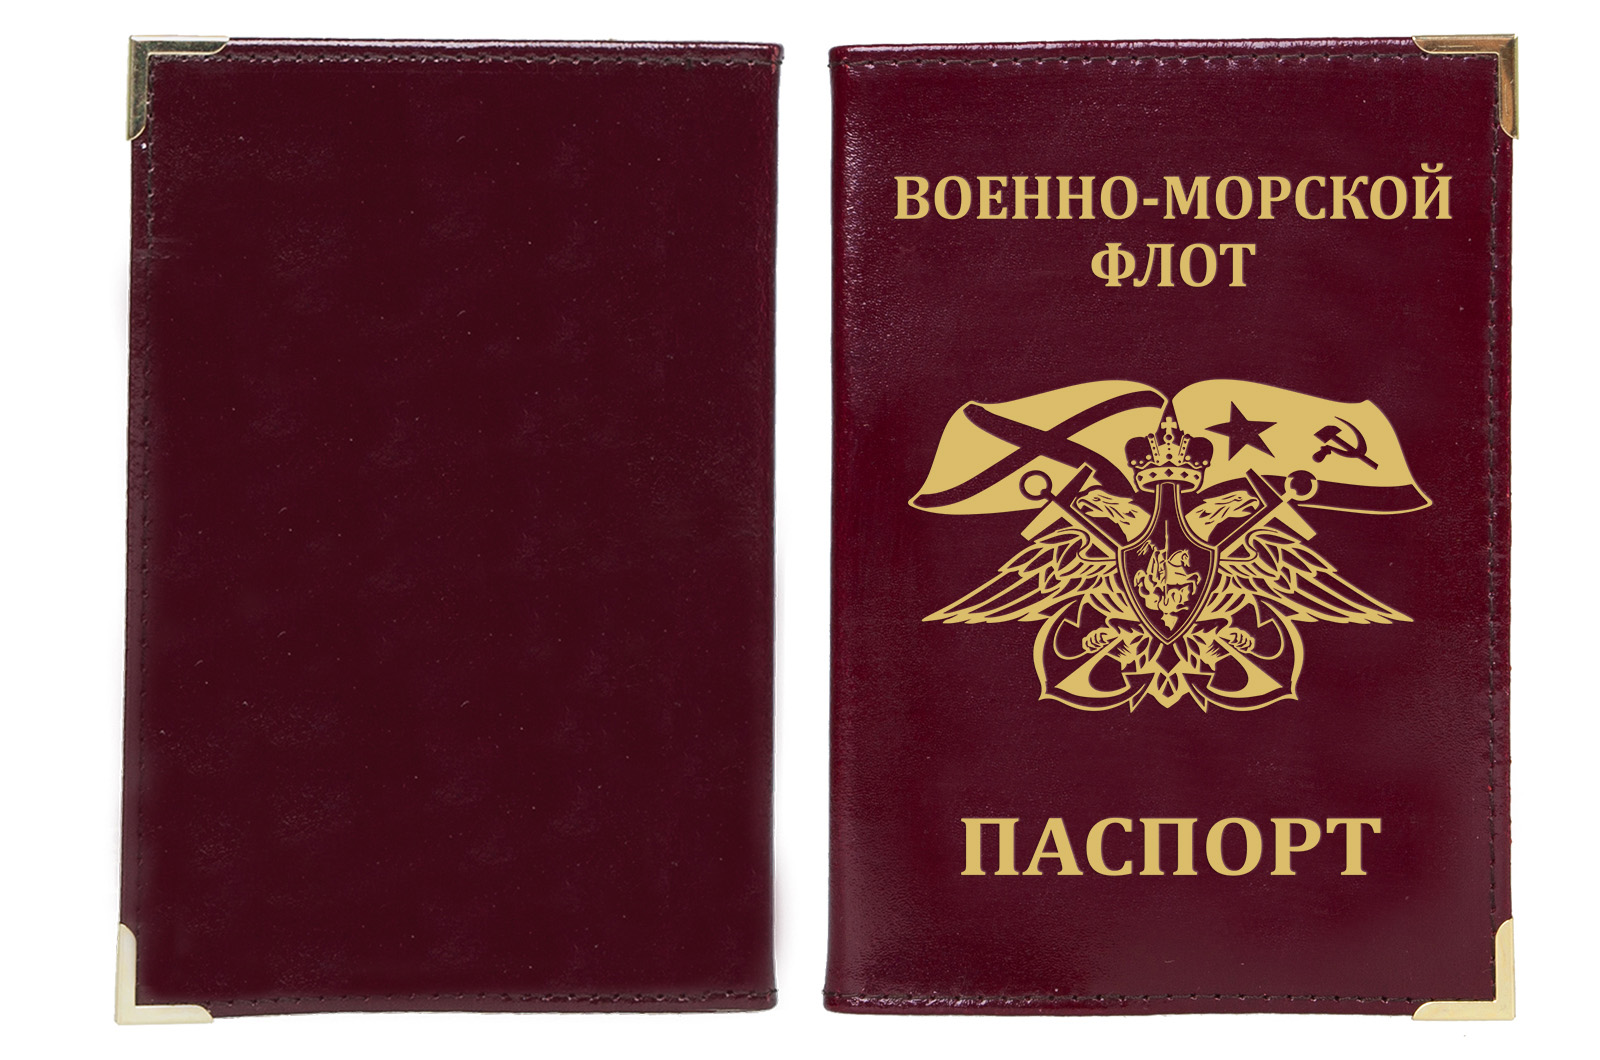 Купить обложку на паспорт ВМФ